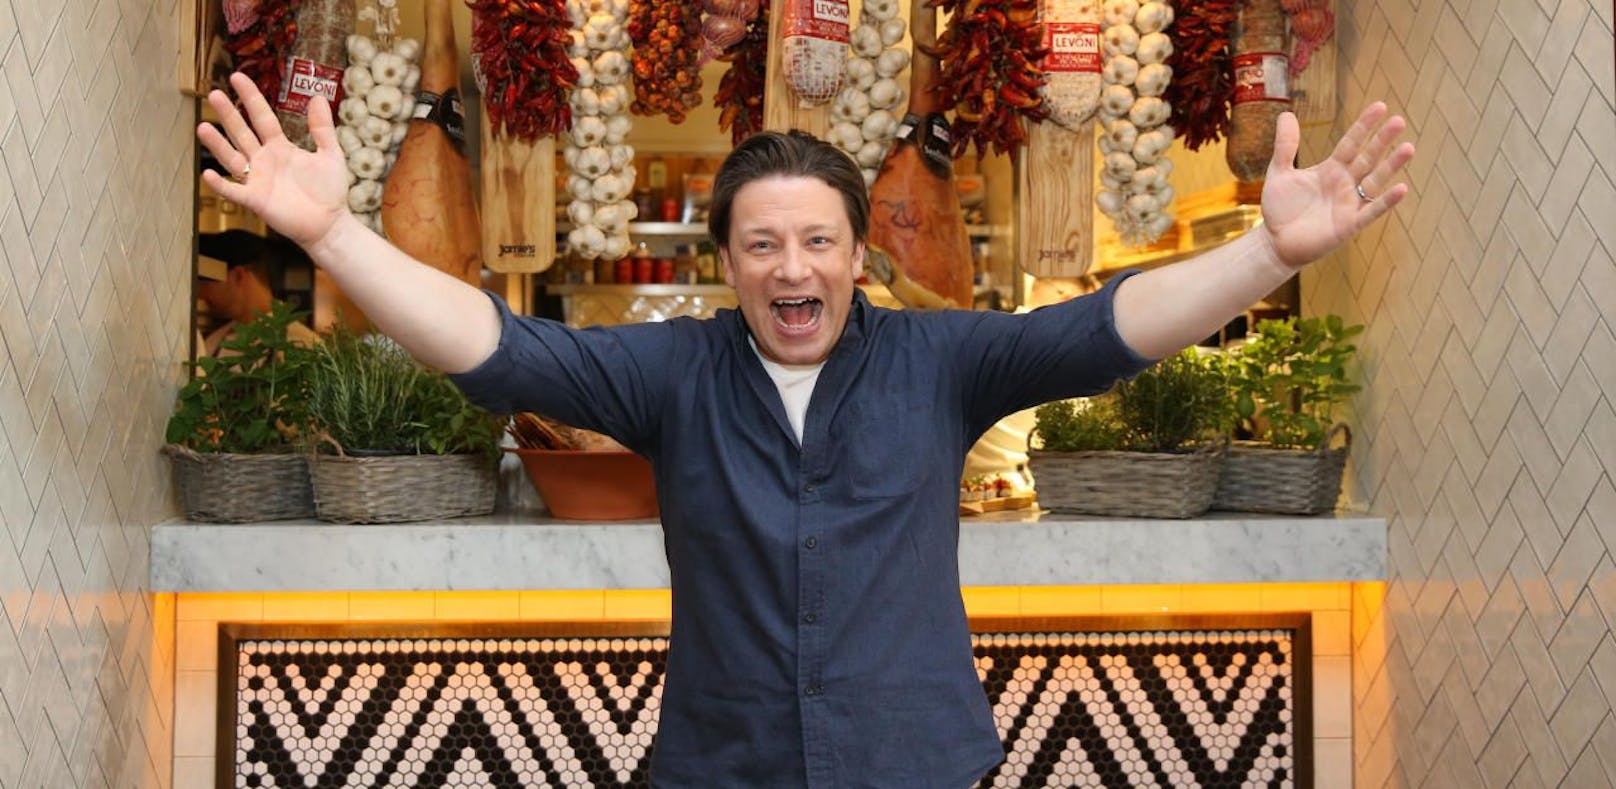 Jamie Oliver erwischt Einbrecher & hält ihn fest